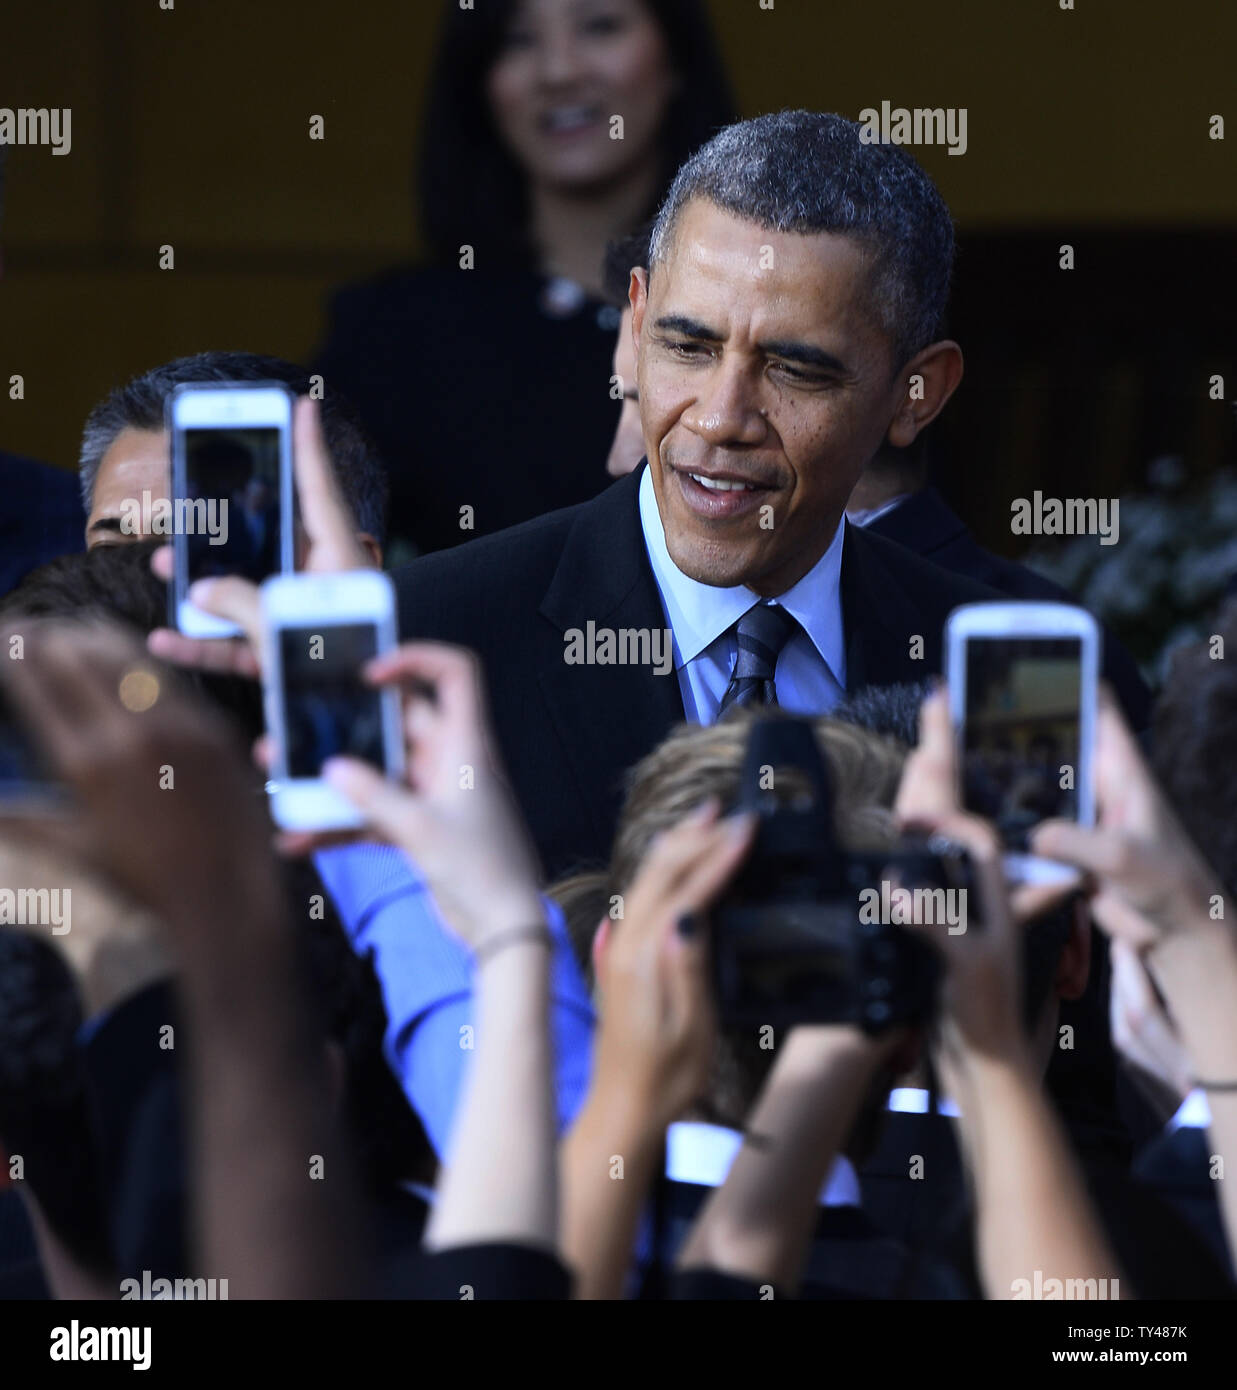 Le président américain Barack Obama serre la main après l'adressage d'une foule de 2 000 personnes à DreamWorks Studios après une visite guidée du campus à Glendale, Californie le 26 novembre 2013. Obama a salué l'industrie du divertissement comme un point lumineux 'économiques' qui reflète les valeurs positives. UPI/Jim Ruymen Banque D'Images